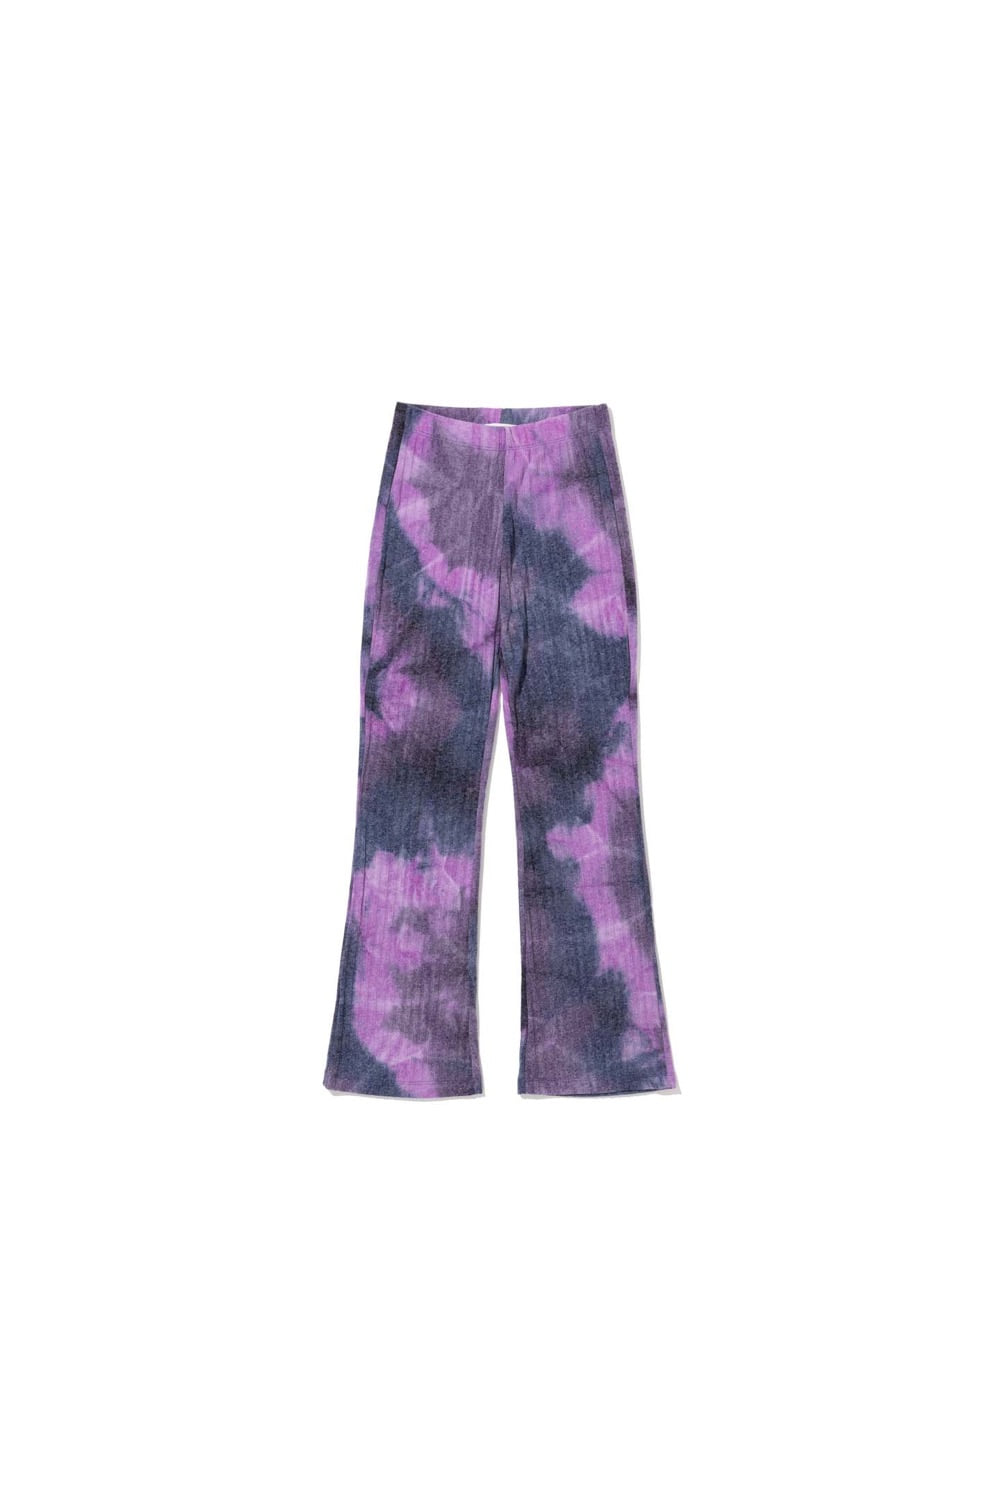 SS 22 tie-dye boot-cut pants - purple